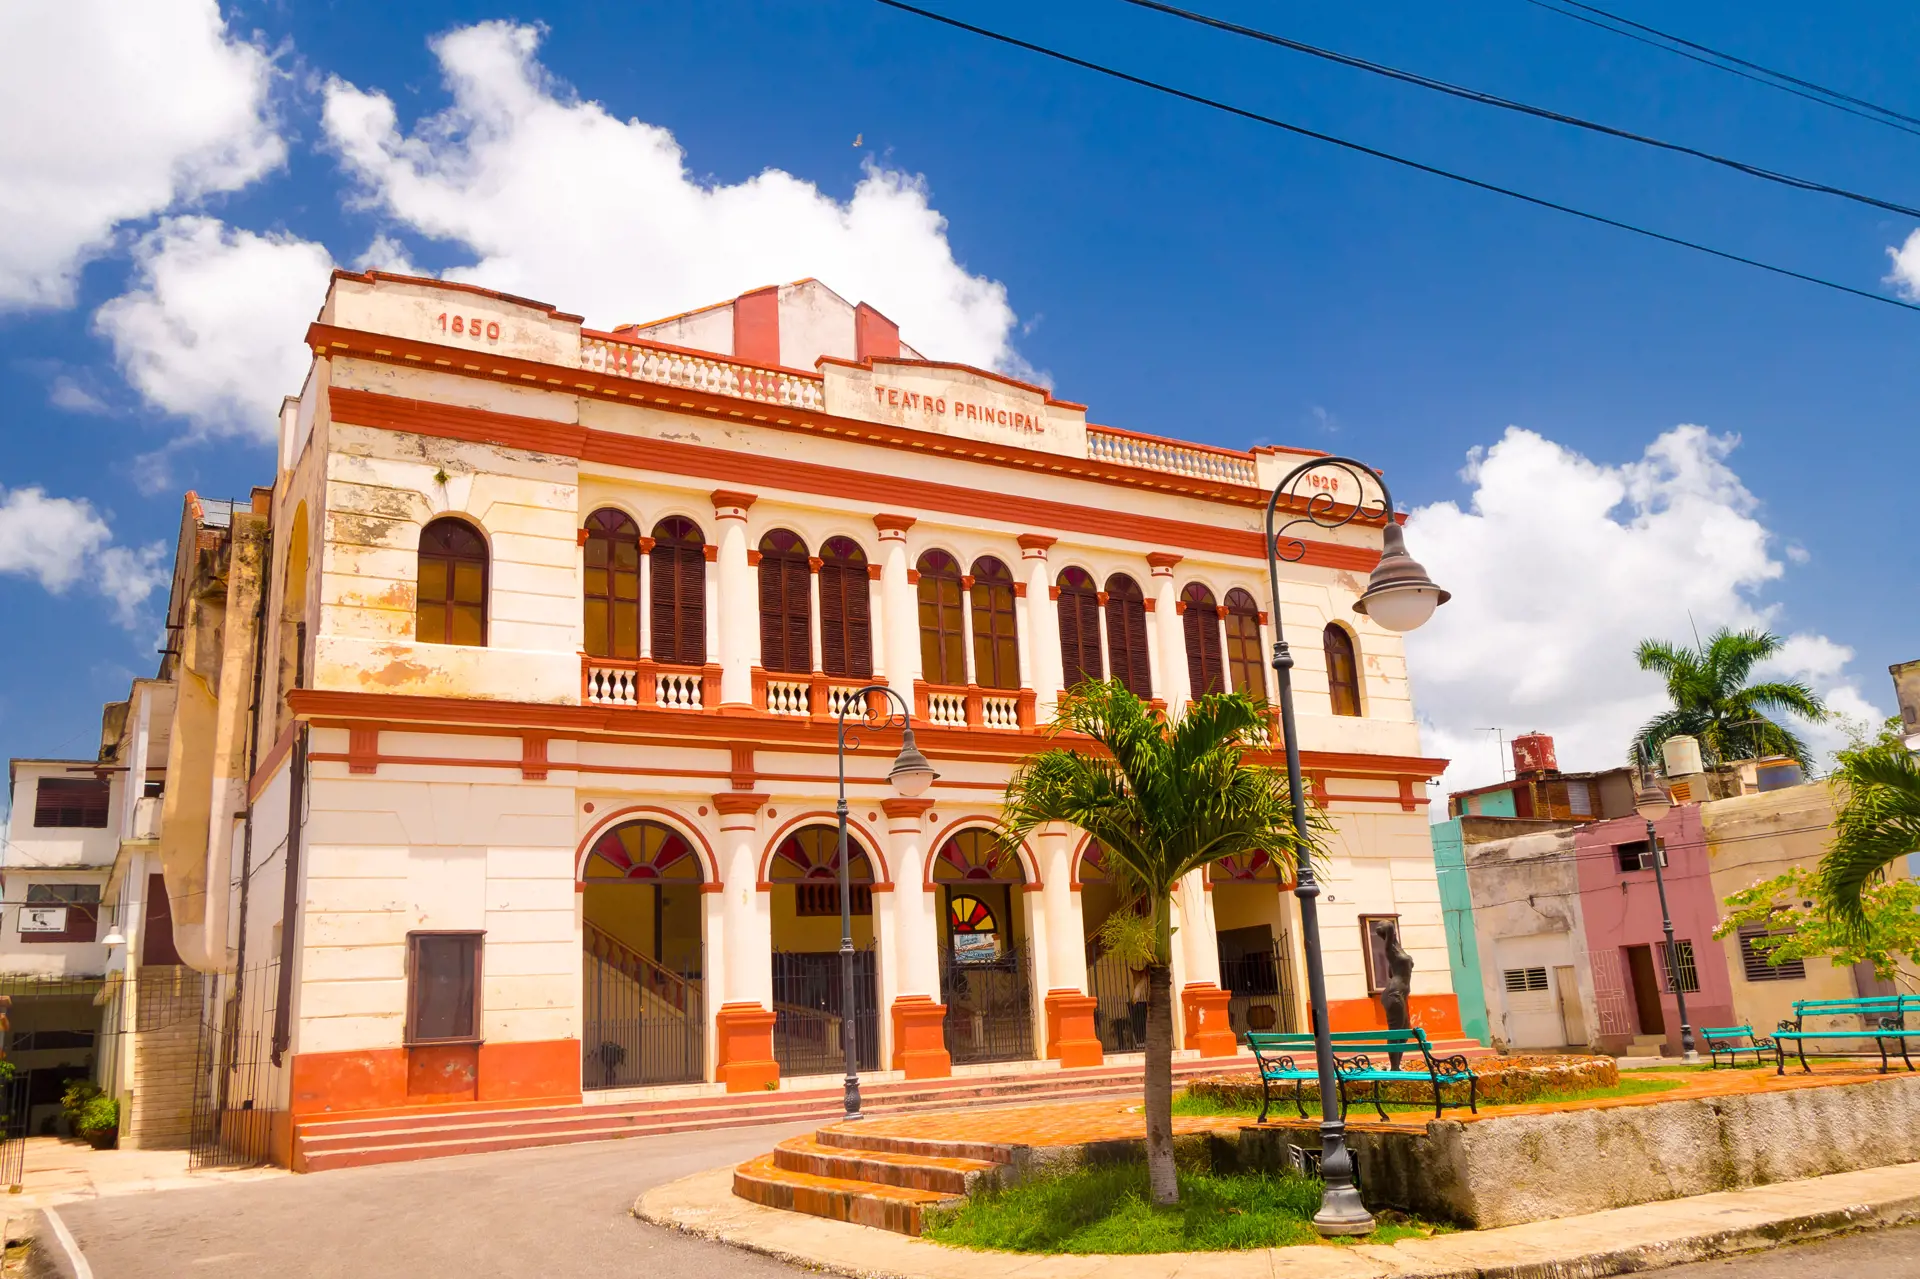 CAMAGÜEYS TEATER - I Camagüey kan I også se smukke gamle bygninger, som for eksempel Teatro Principal. Her kan I endda være heldige at komme til at opleve byens verdensberømte ballet i aktion.